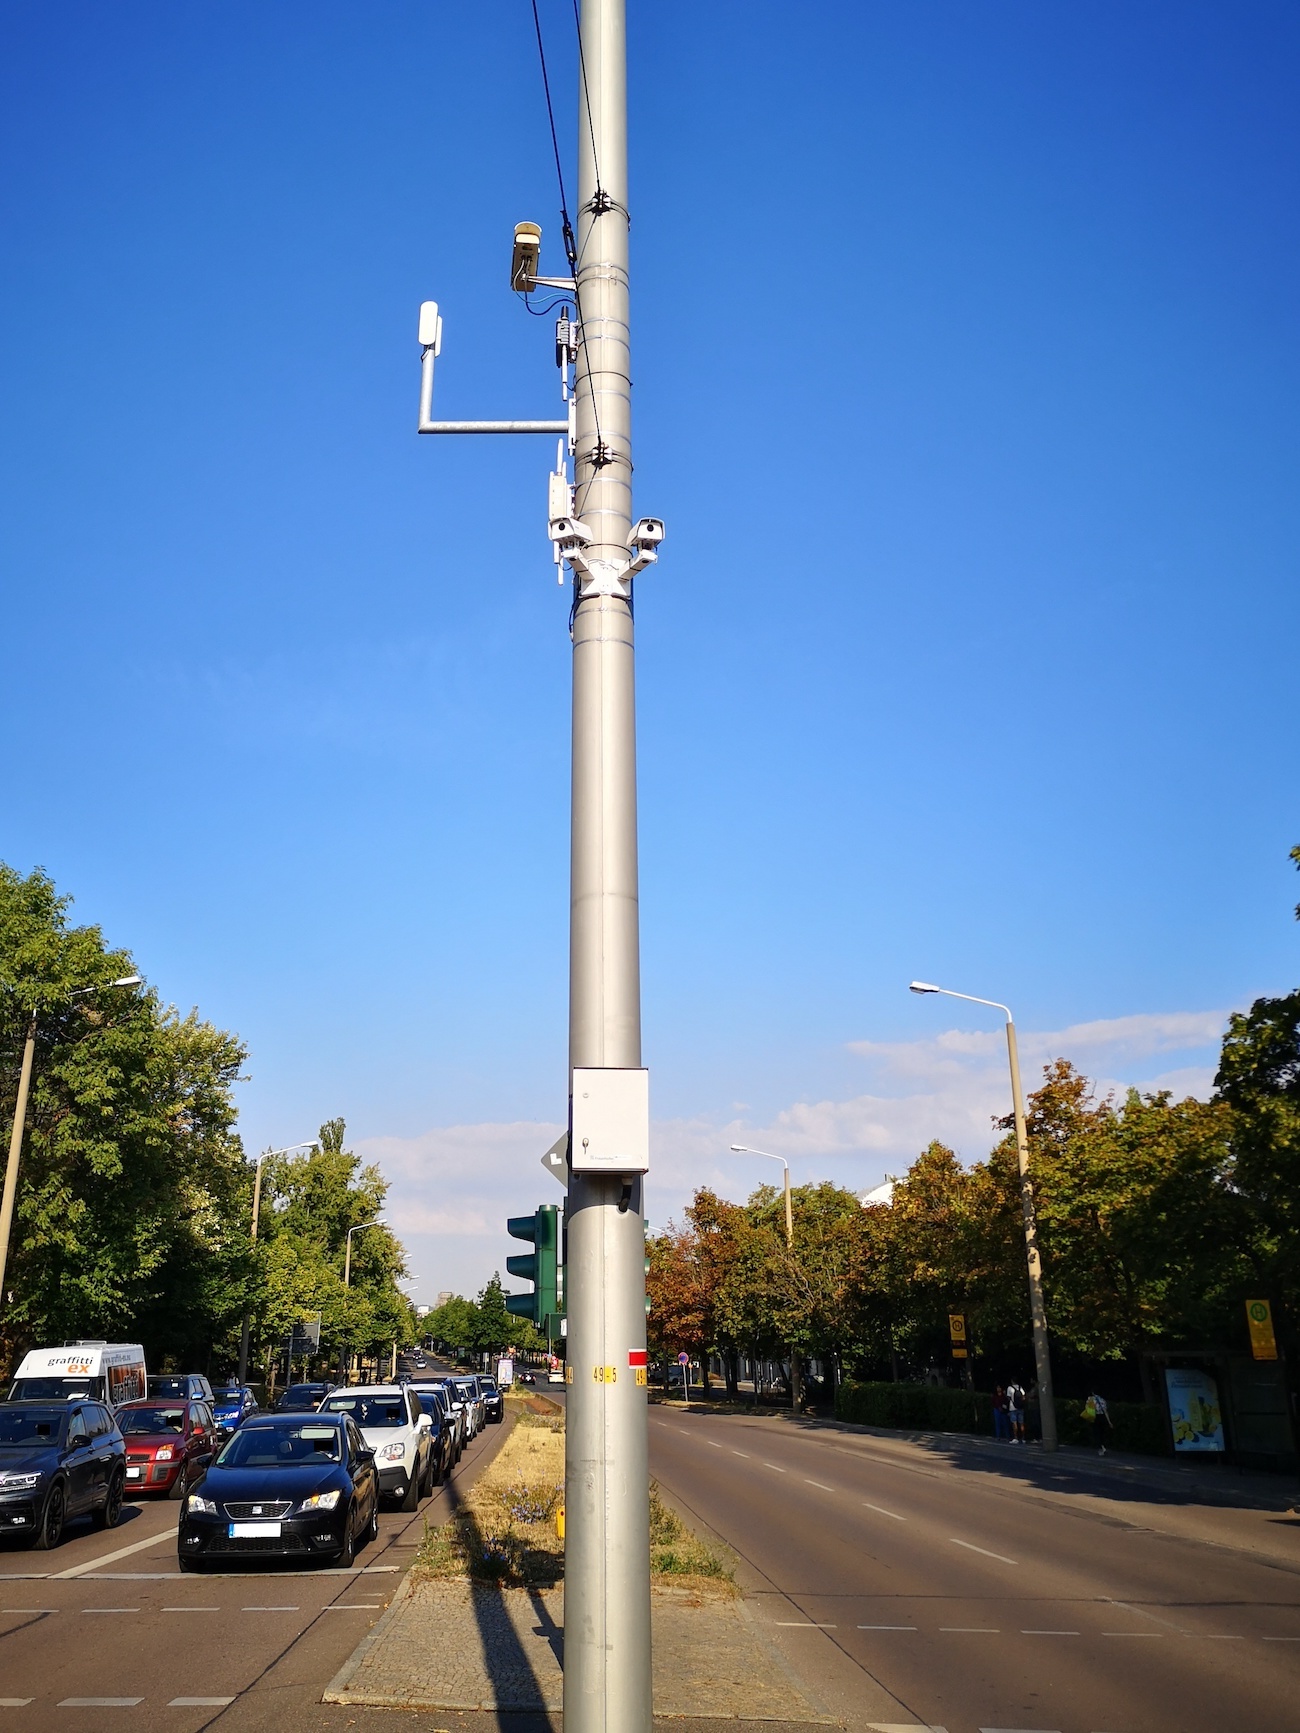 Kameras, die an einem Laternenmast in der Mitte einer Straße angebracht sind